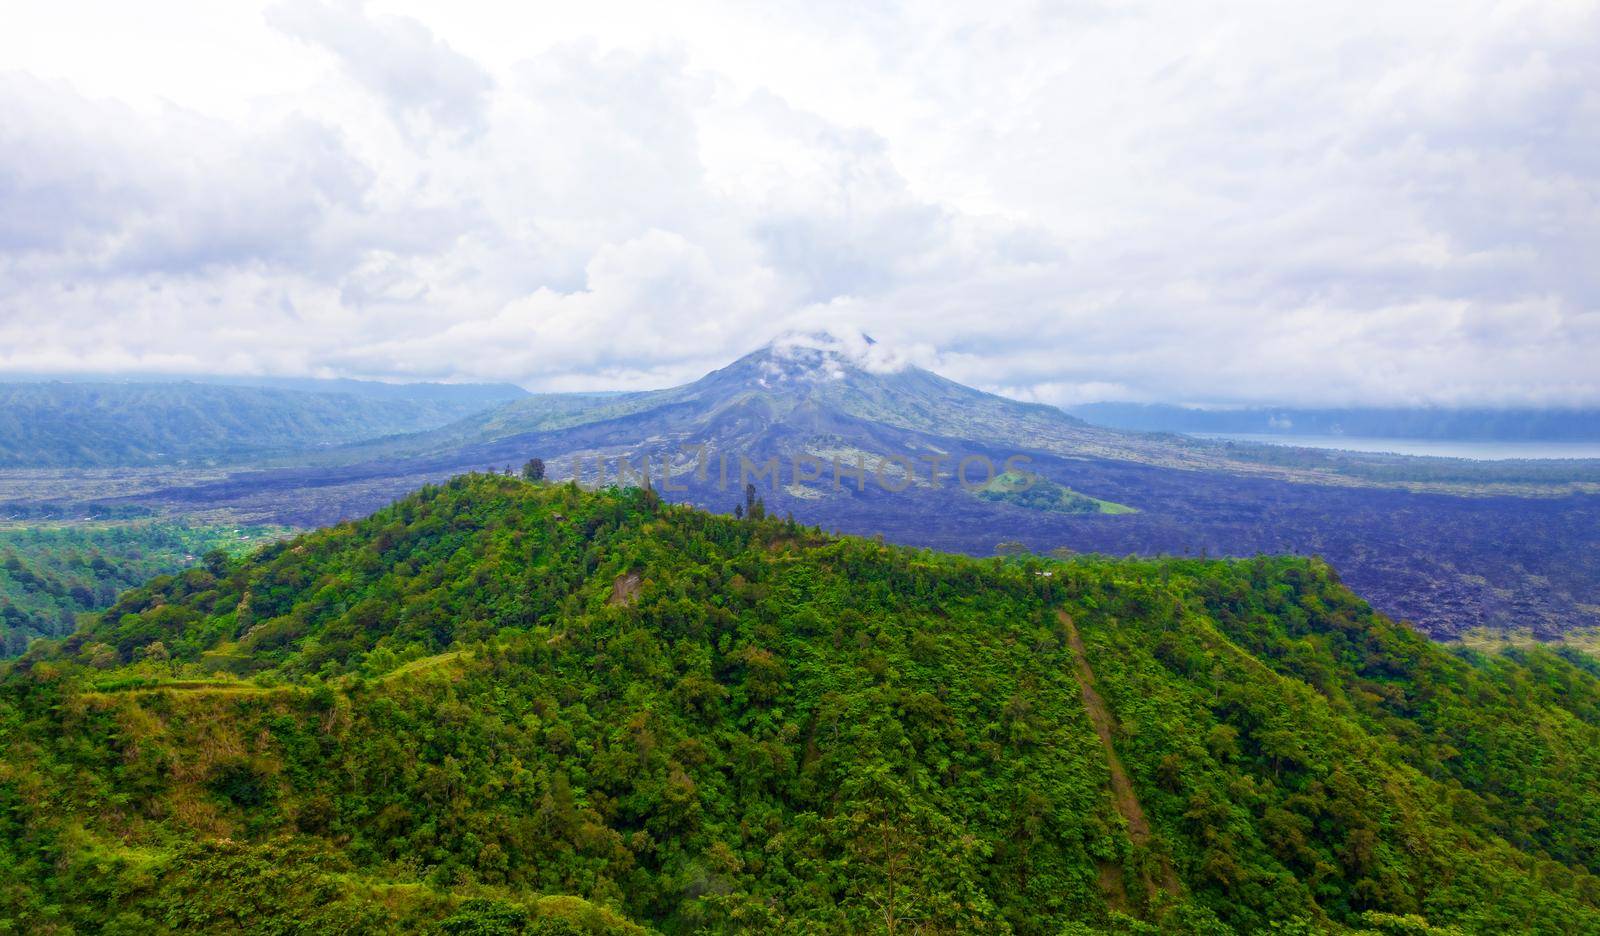 View of an extinct volcano. Mexico. by kolesnikov_studio